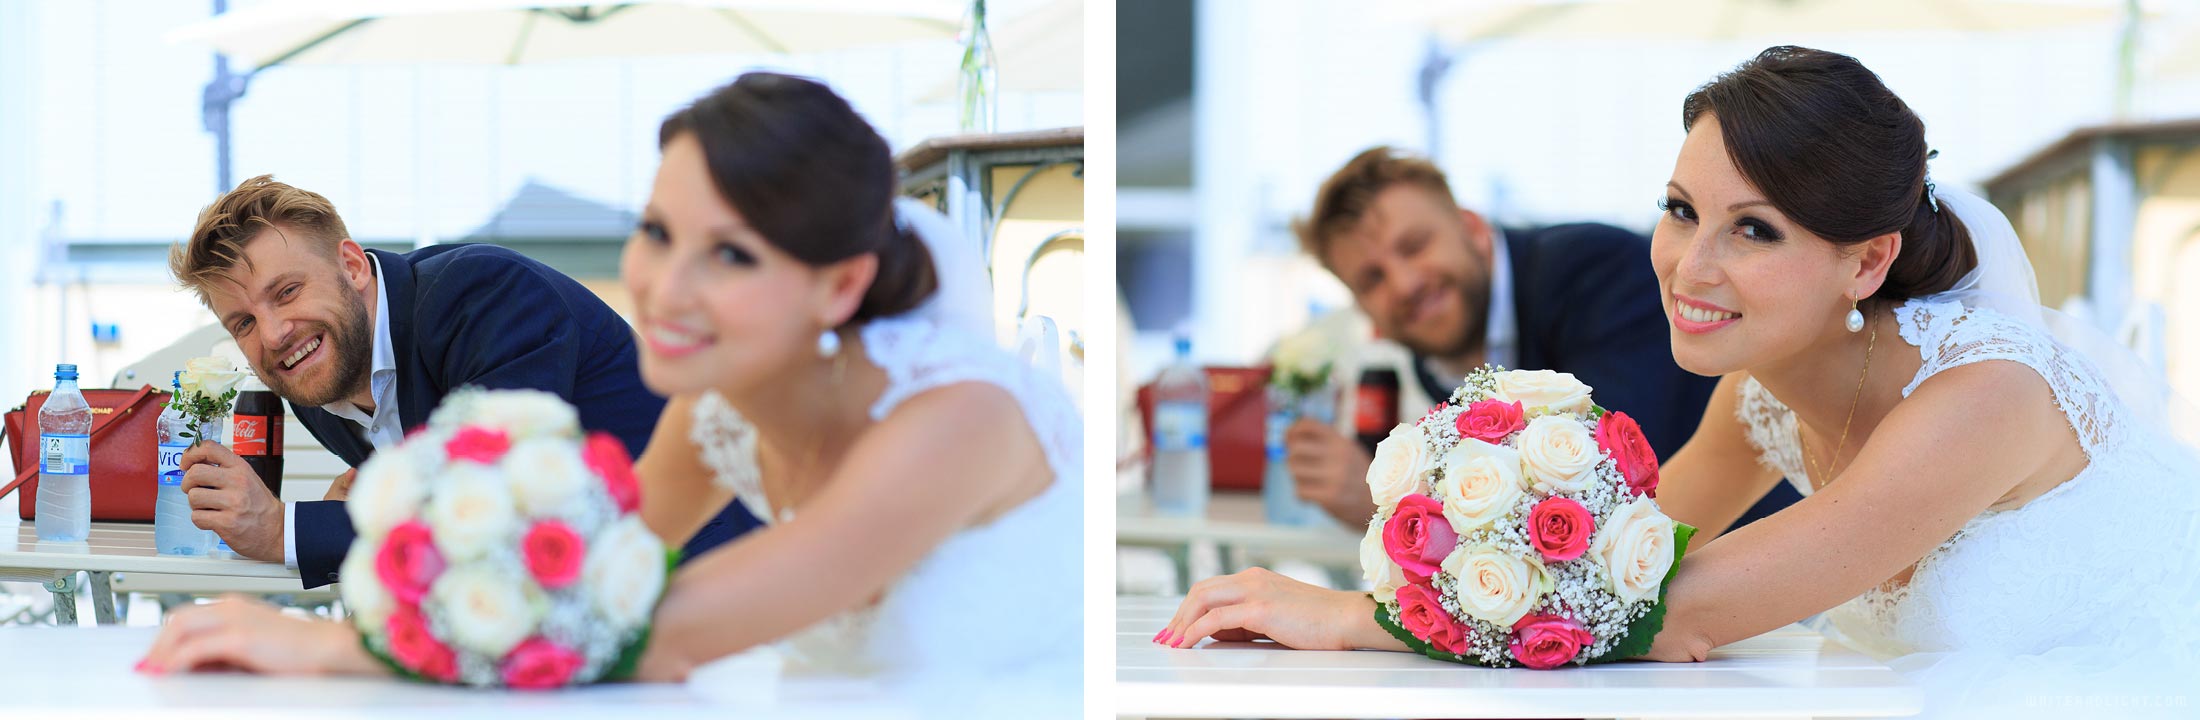 советы для свадебных фото